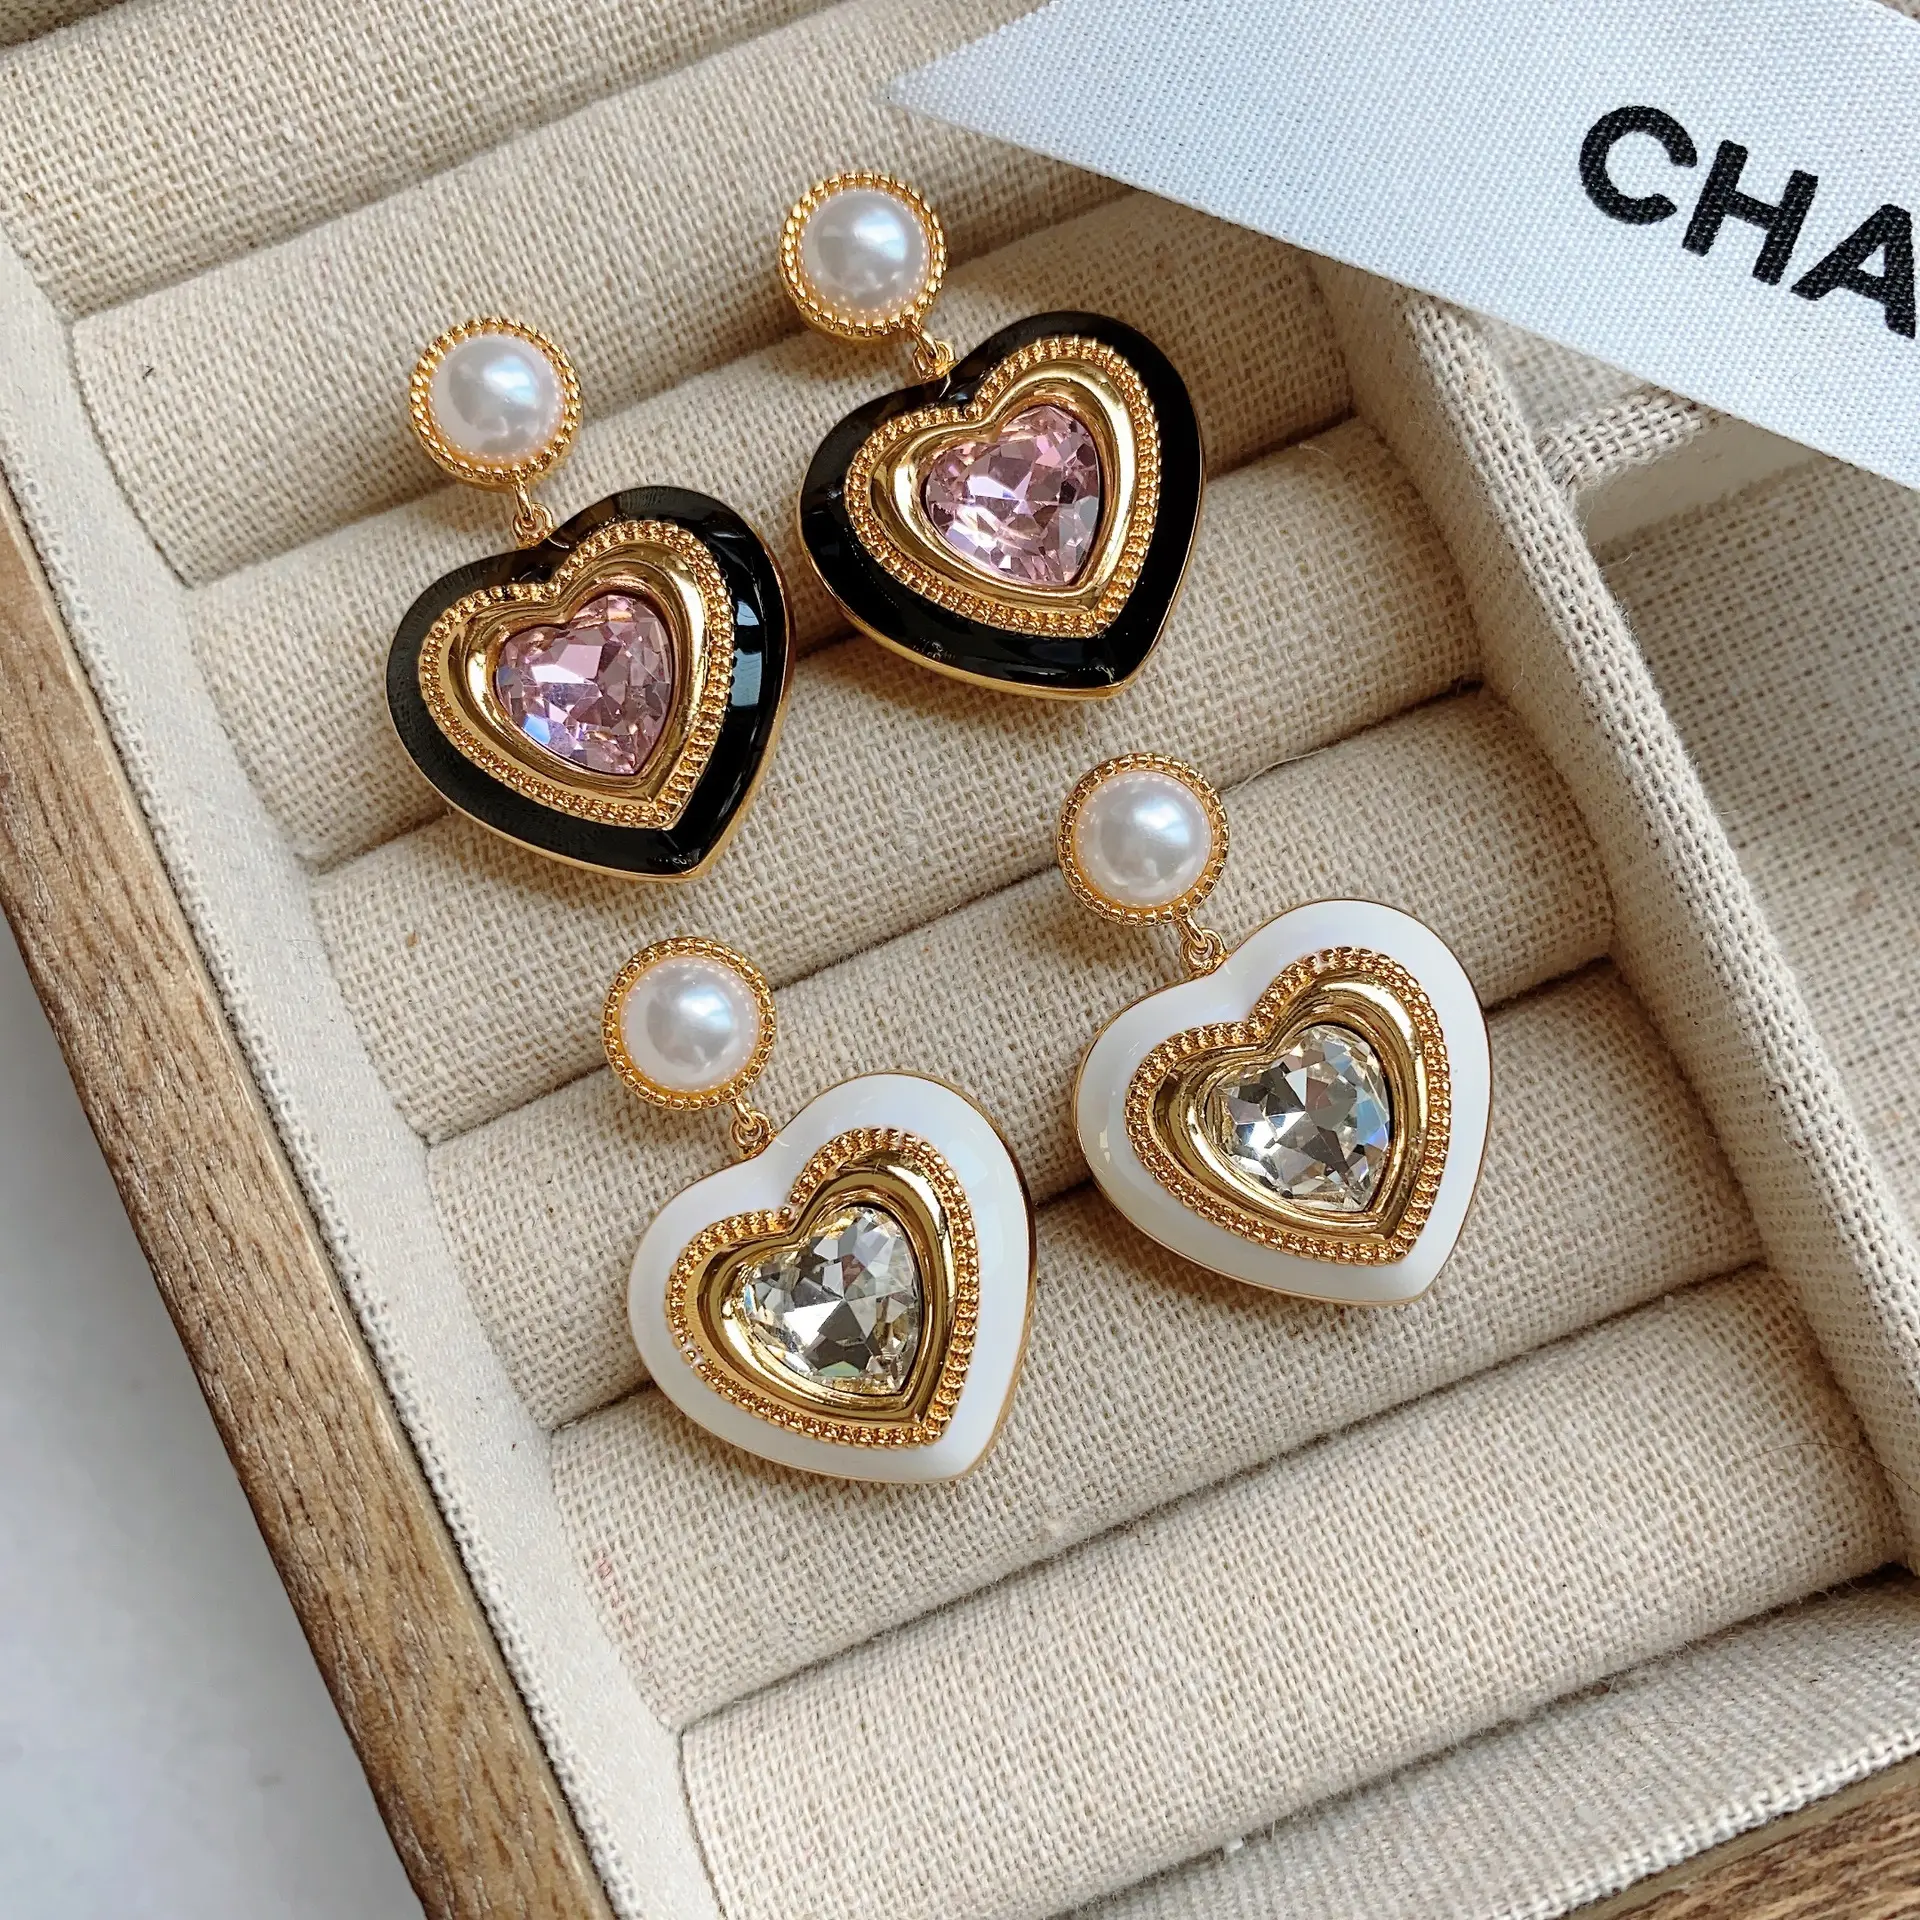 Ingrosso famoso marchio di design orecchini amore perle diamanti Vintage orecchini a cerchio gioielli per le donne